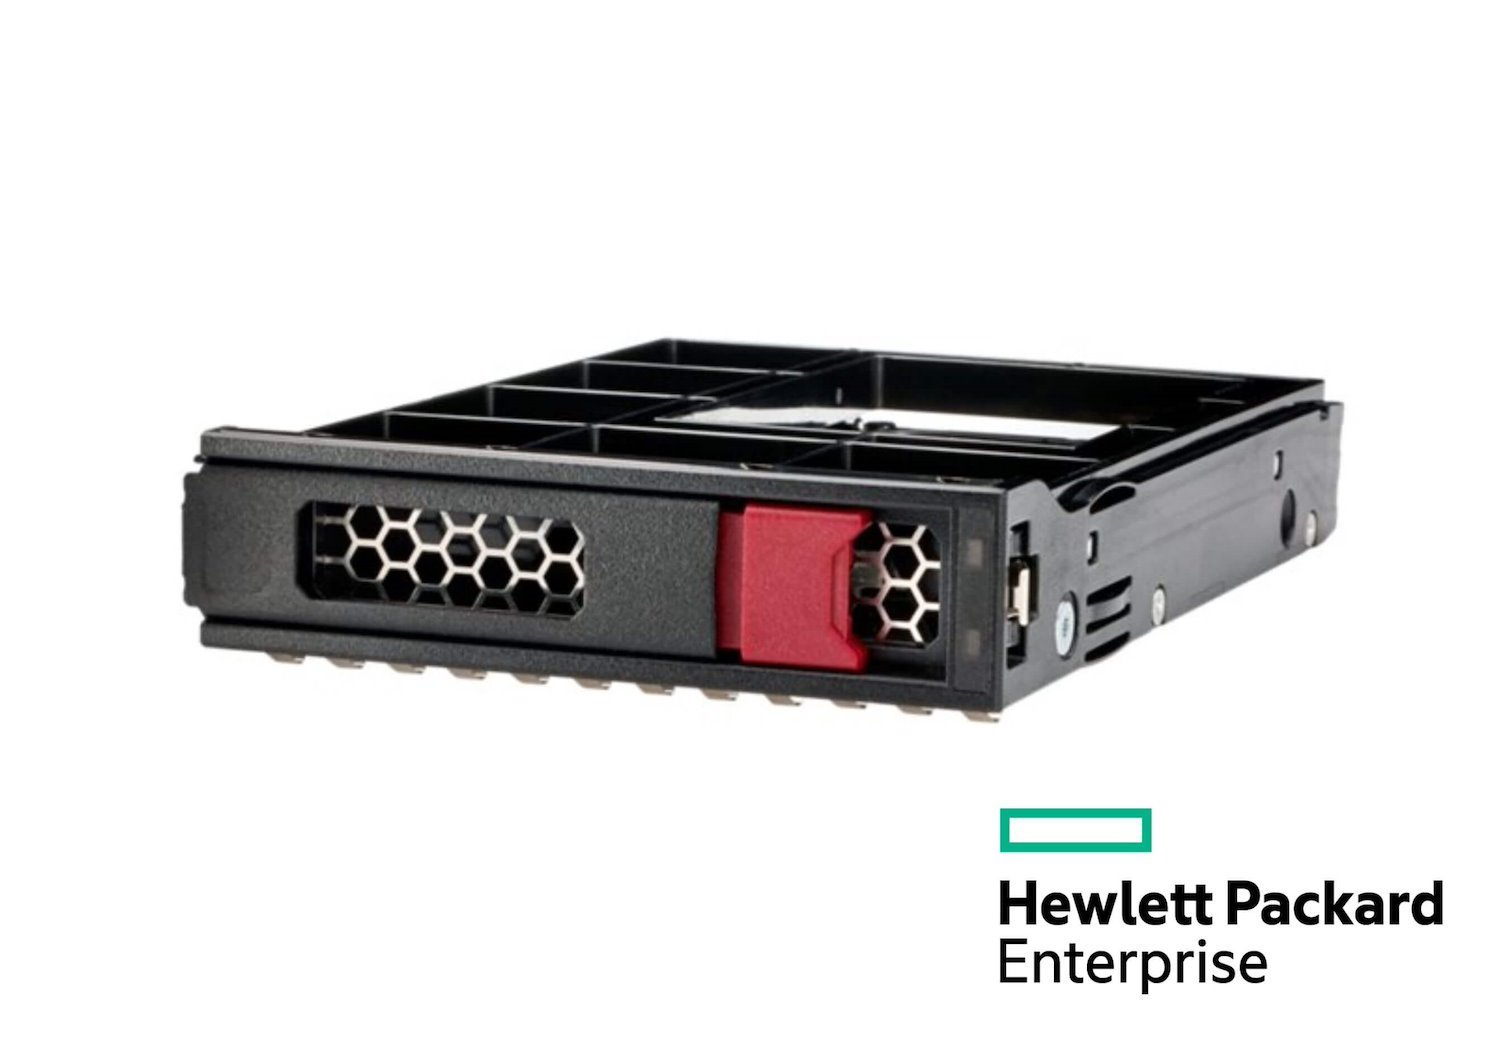 HPE 6 TB Hard Drive - 3.5" Internal - SATA (SATA/600)